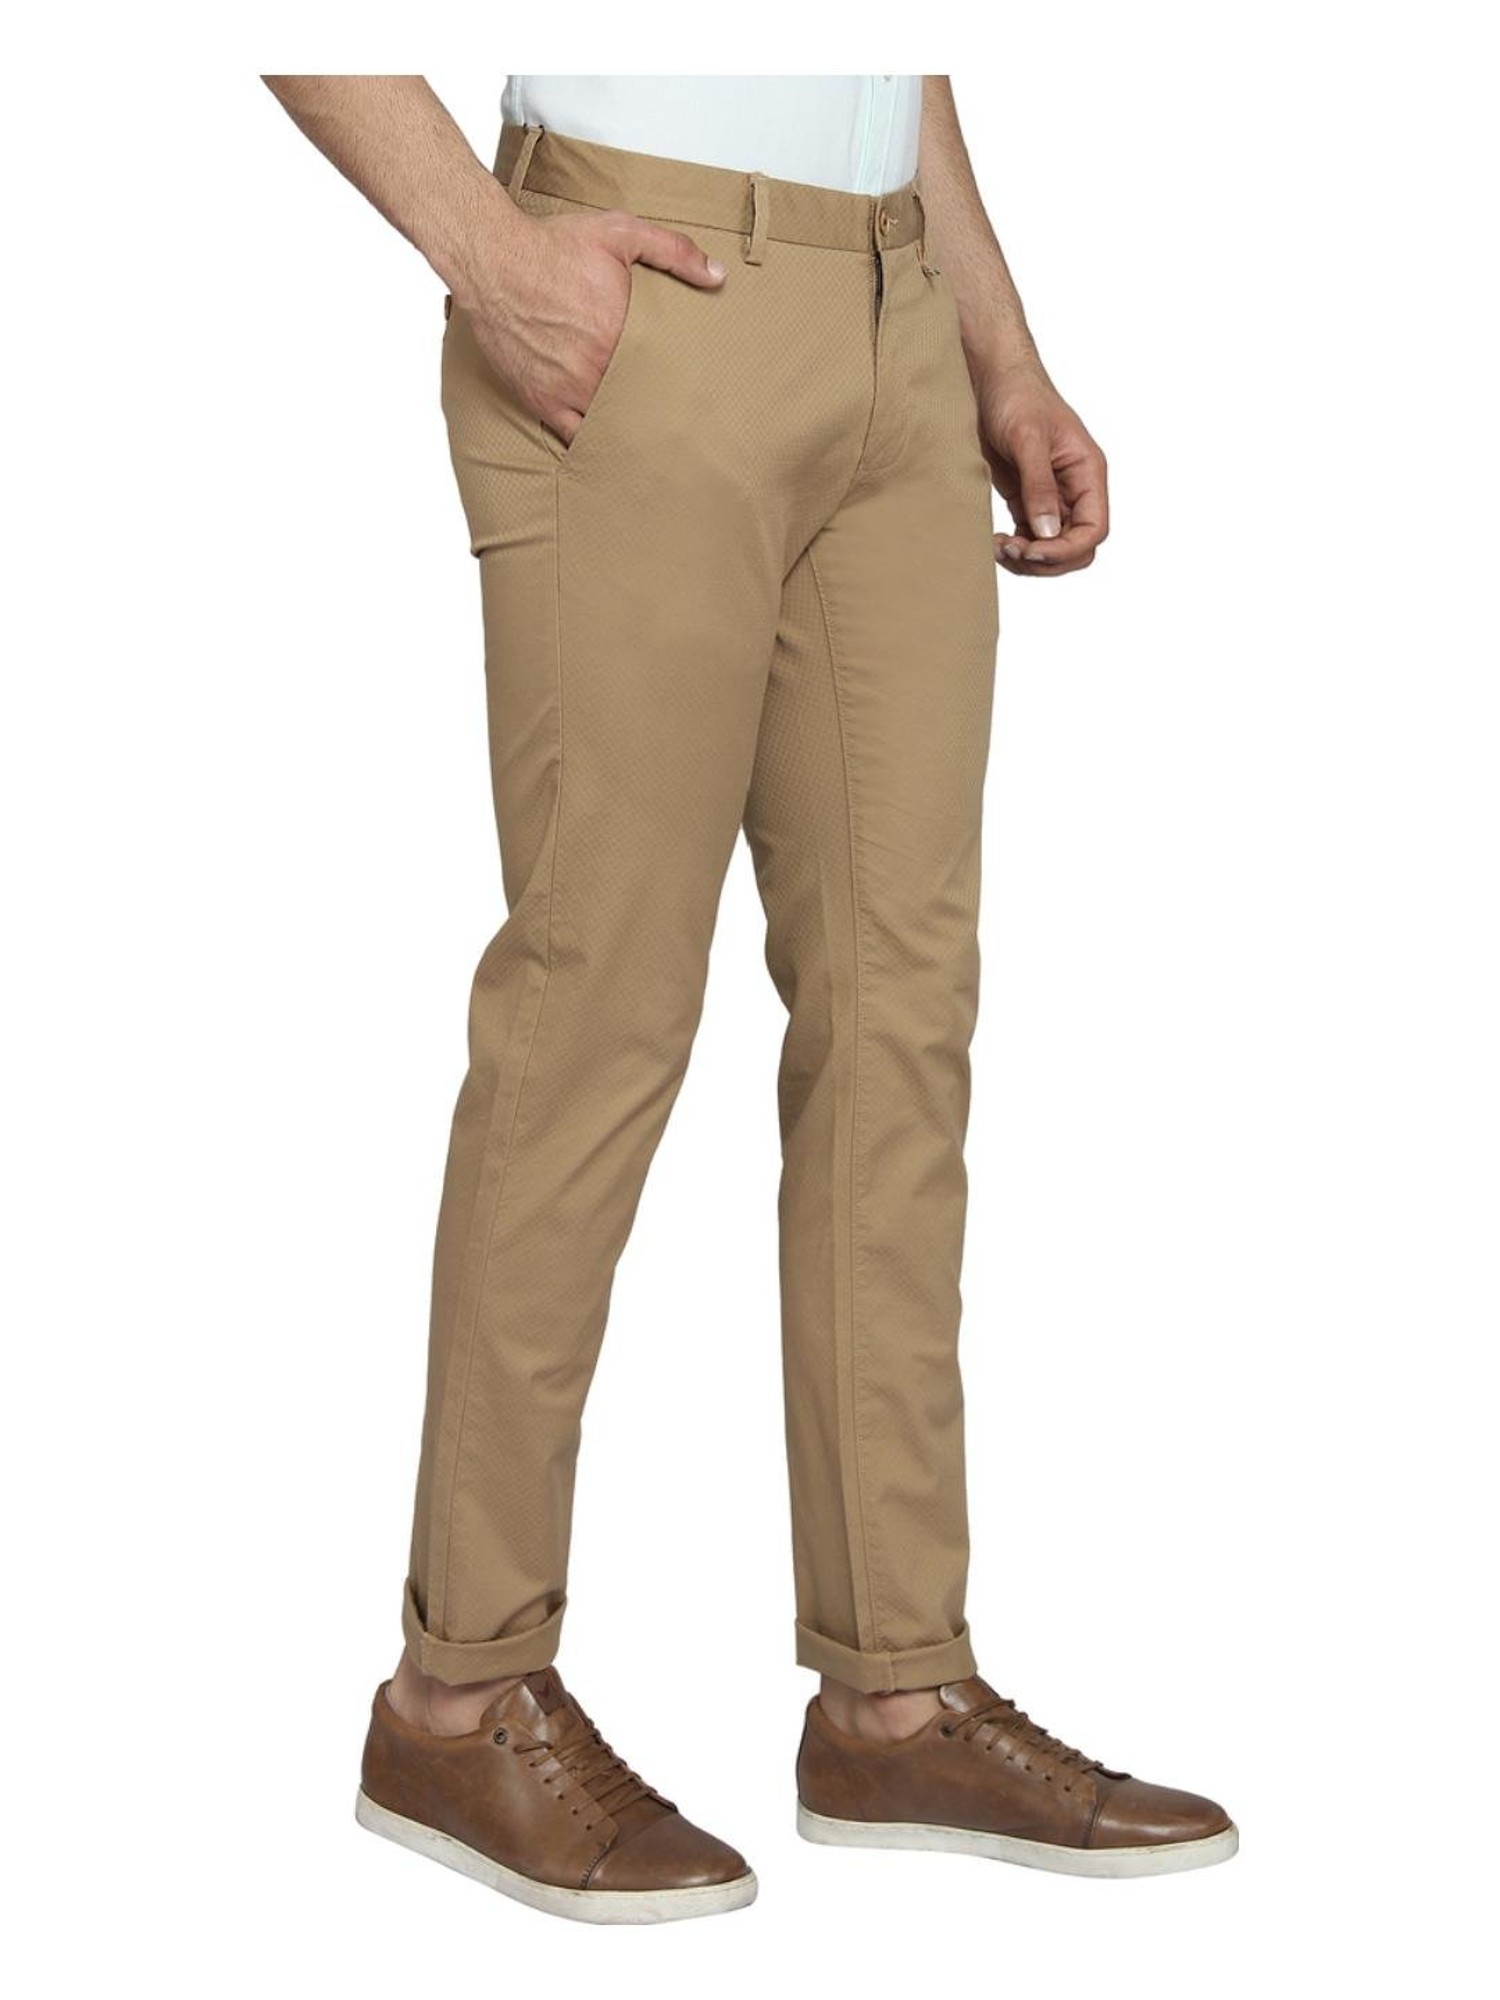 Buy Brown Trousers  Pants for Men by BLACKBERRYS Online  Ajiocom